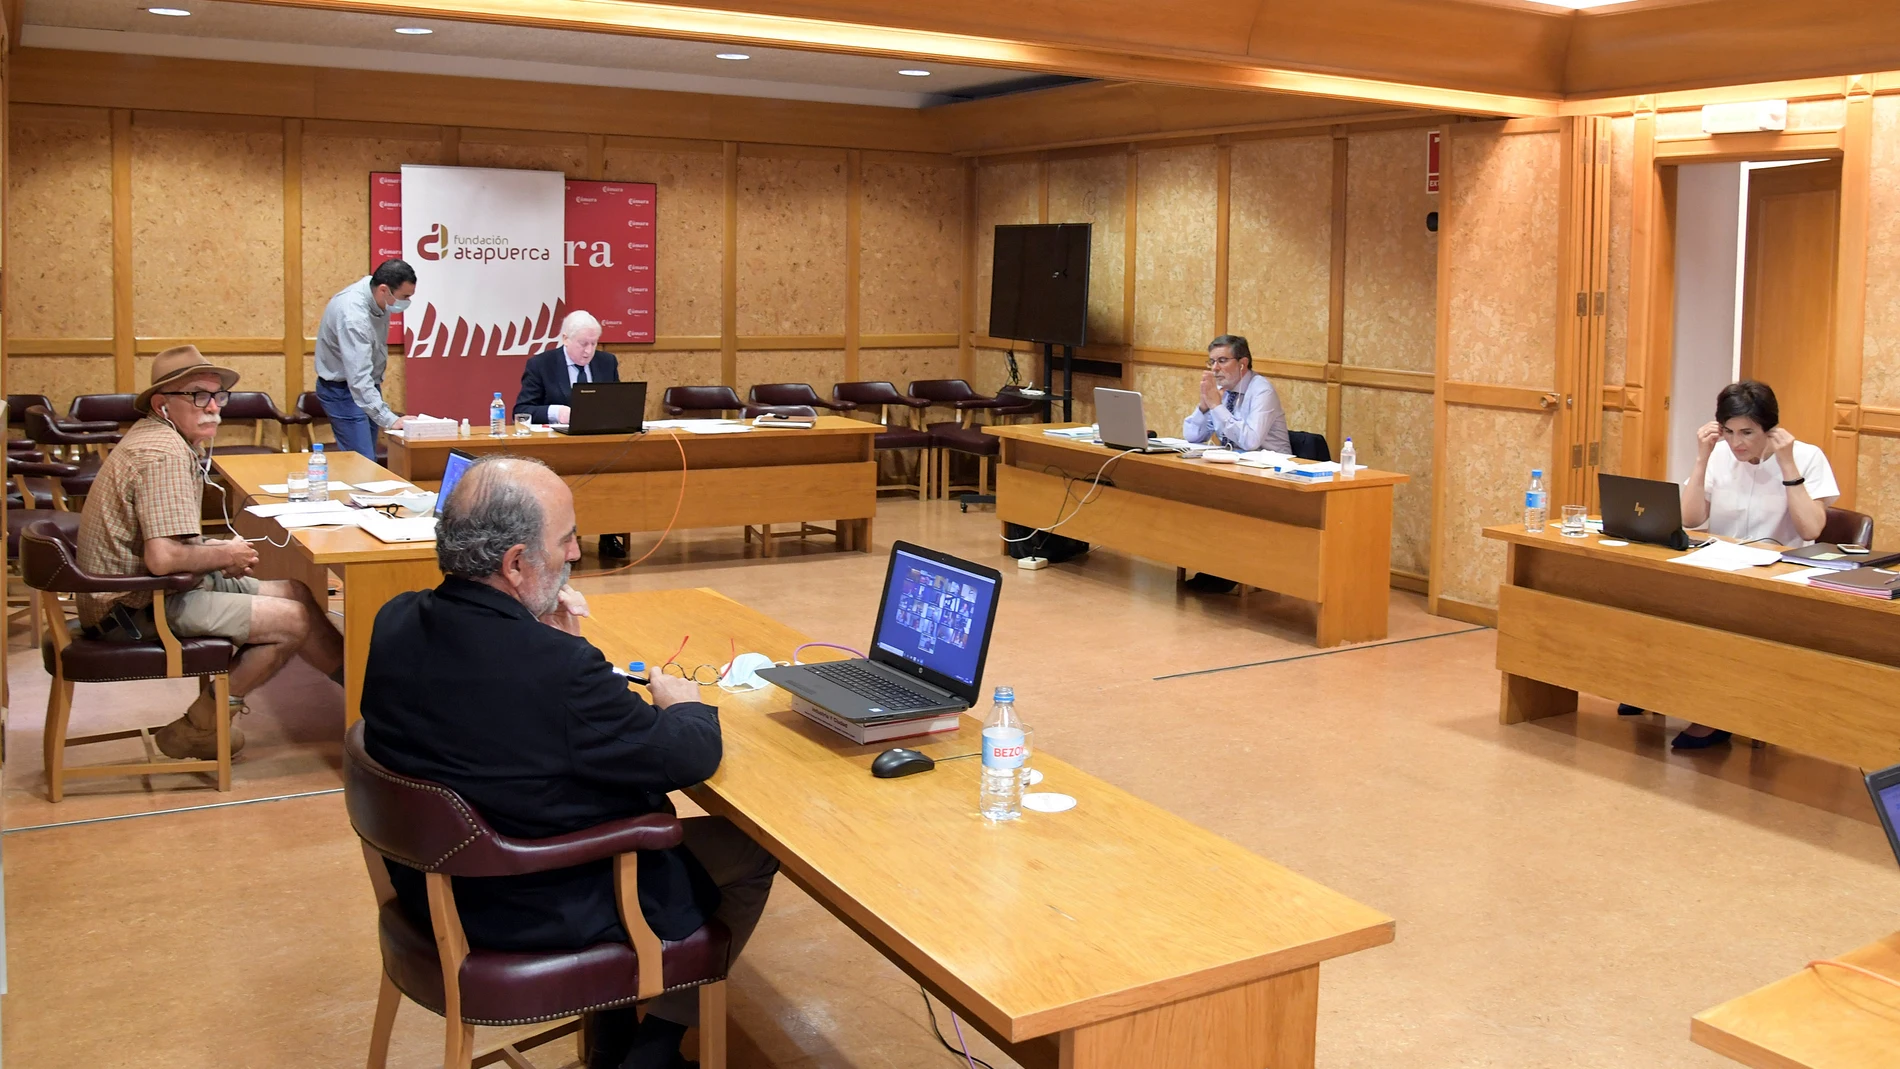 La Fundación Atapuerca celebra su primera reunión del Patronato del año 2020